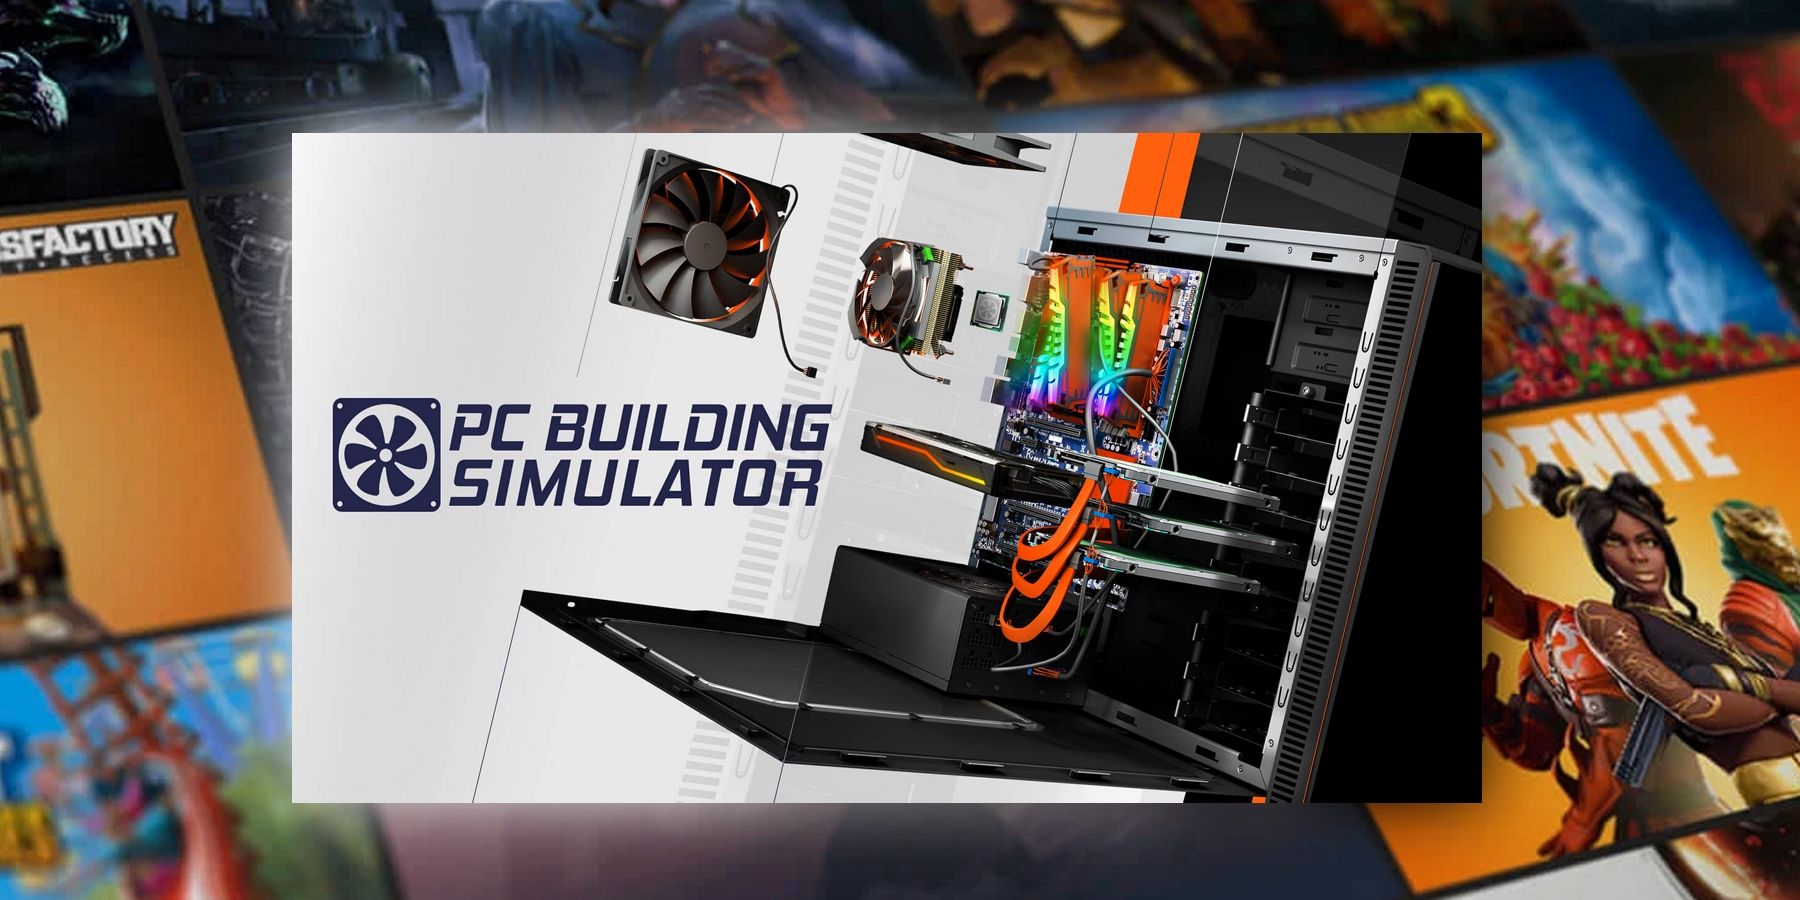 Epic Games Store Ücretsiz Oyun PC Building Simulator Açıklaması